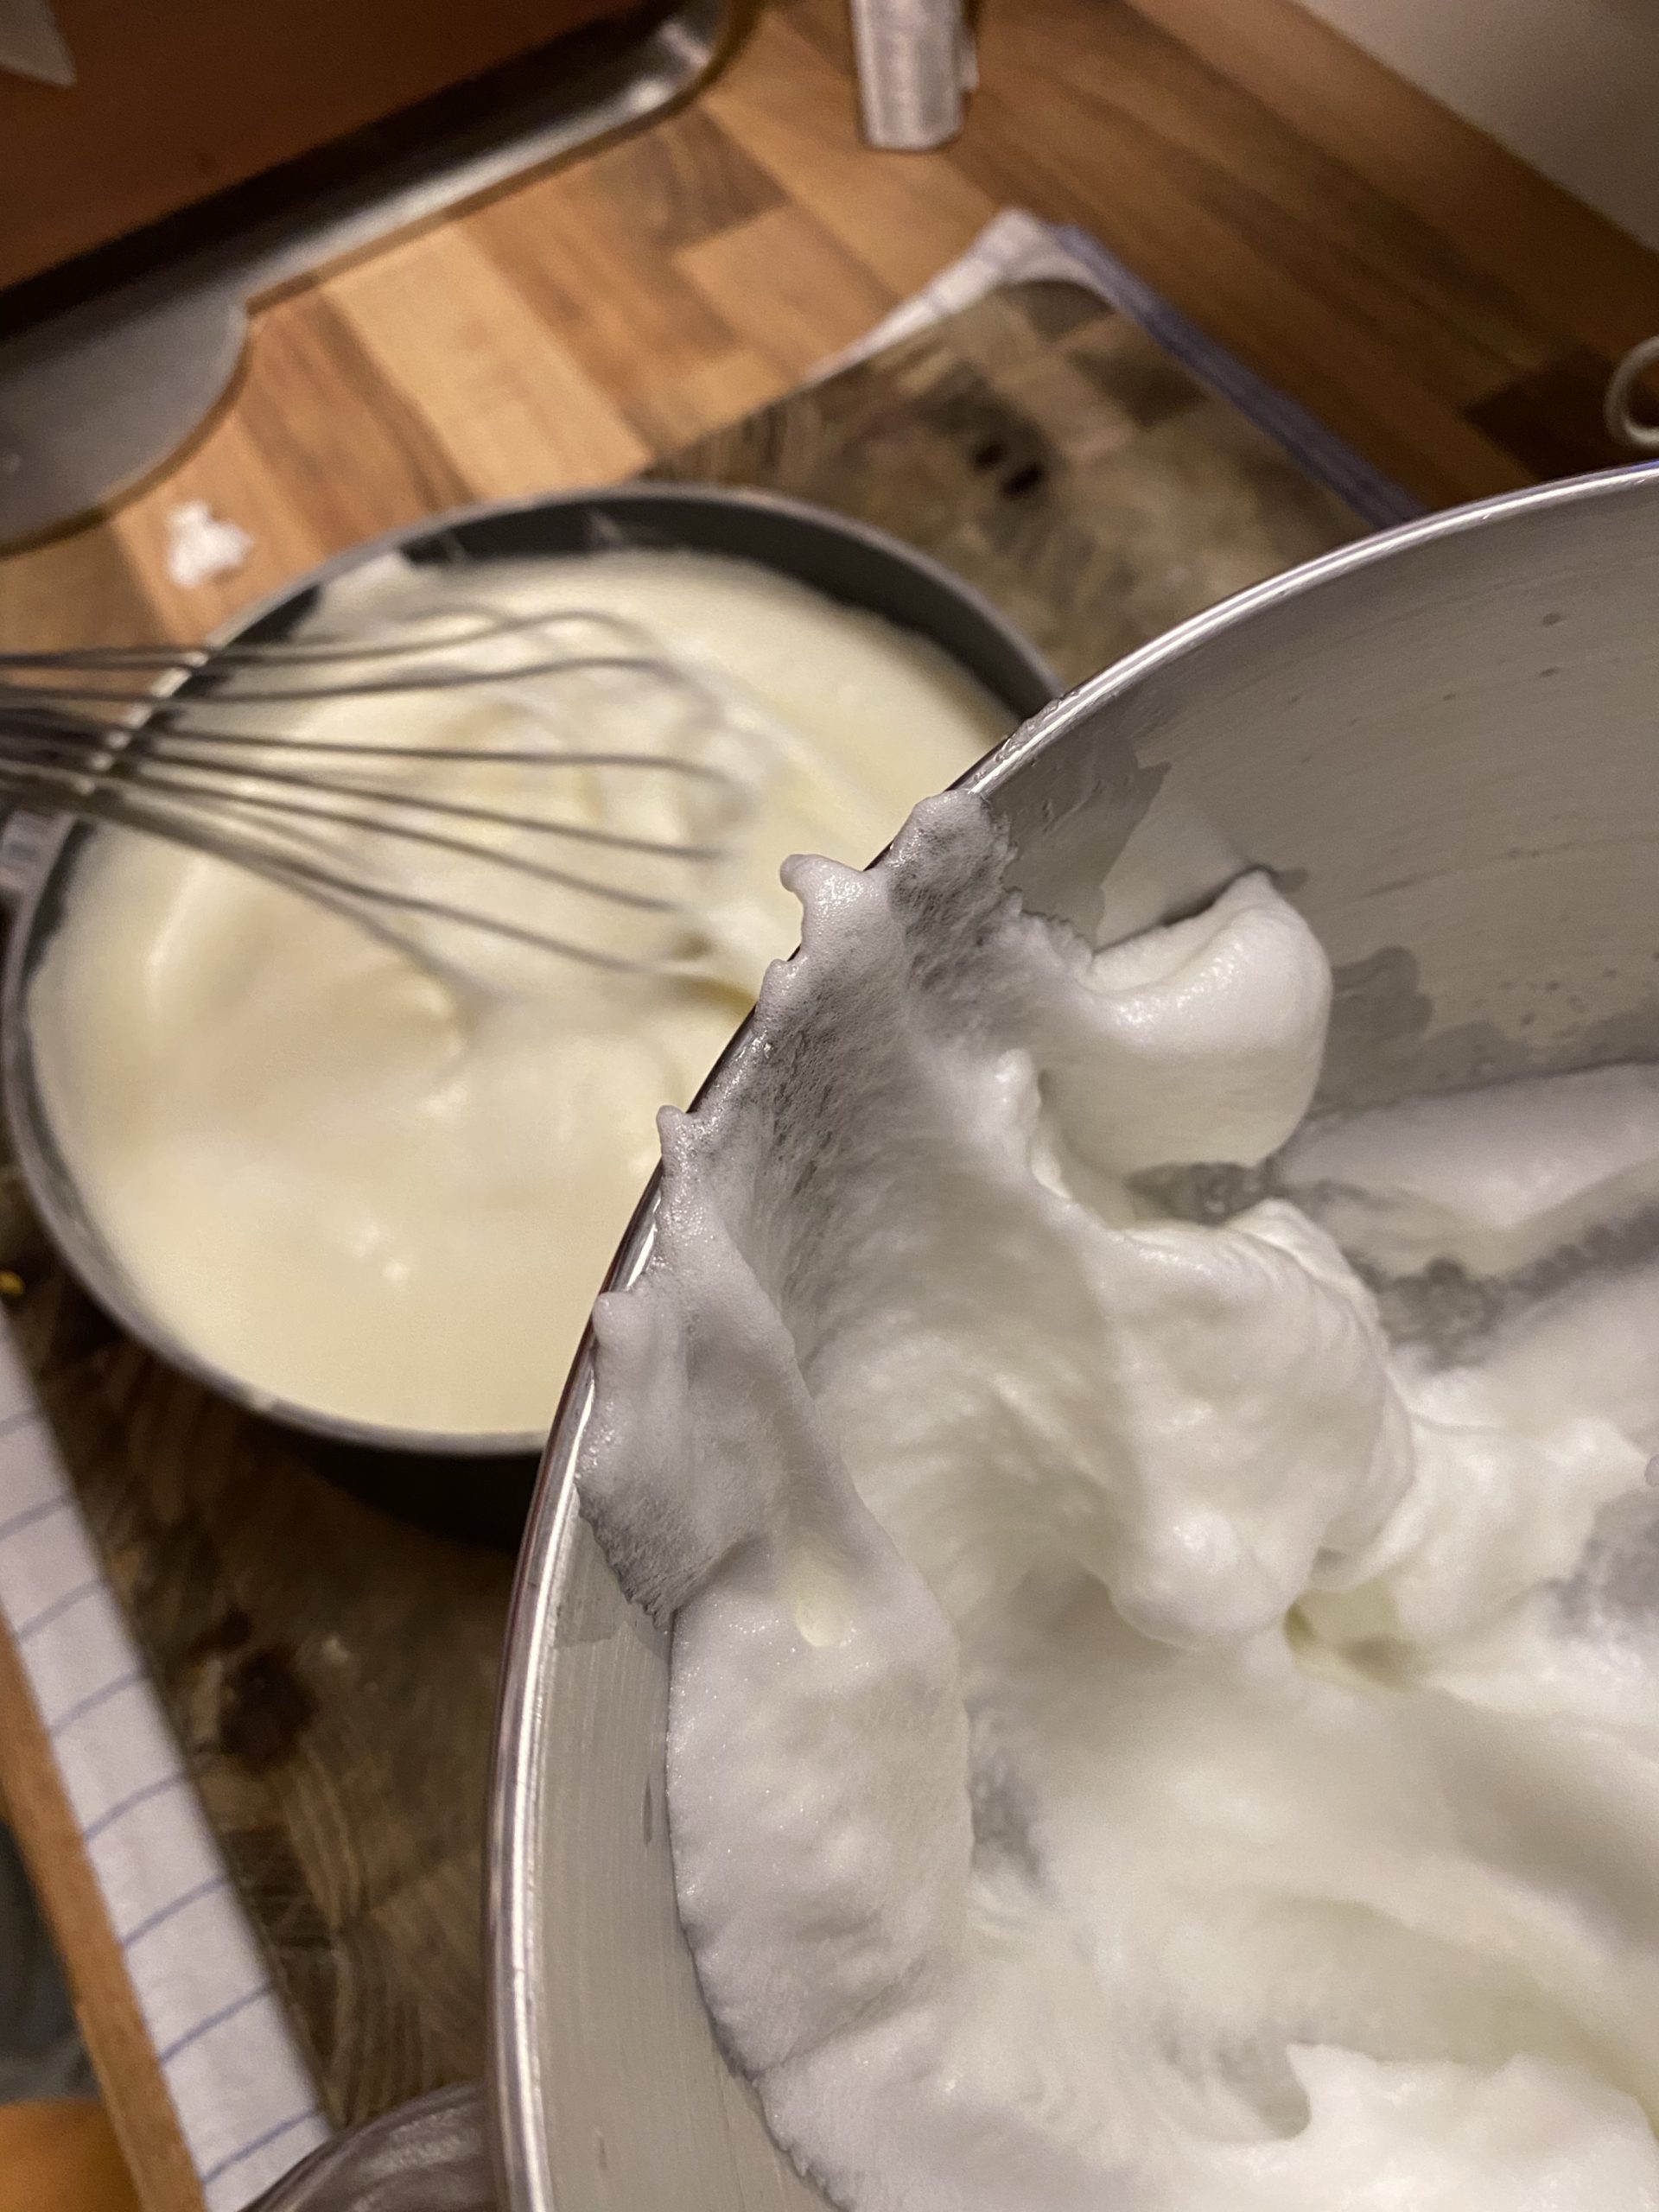 Mixing the egg whites